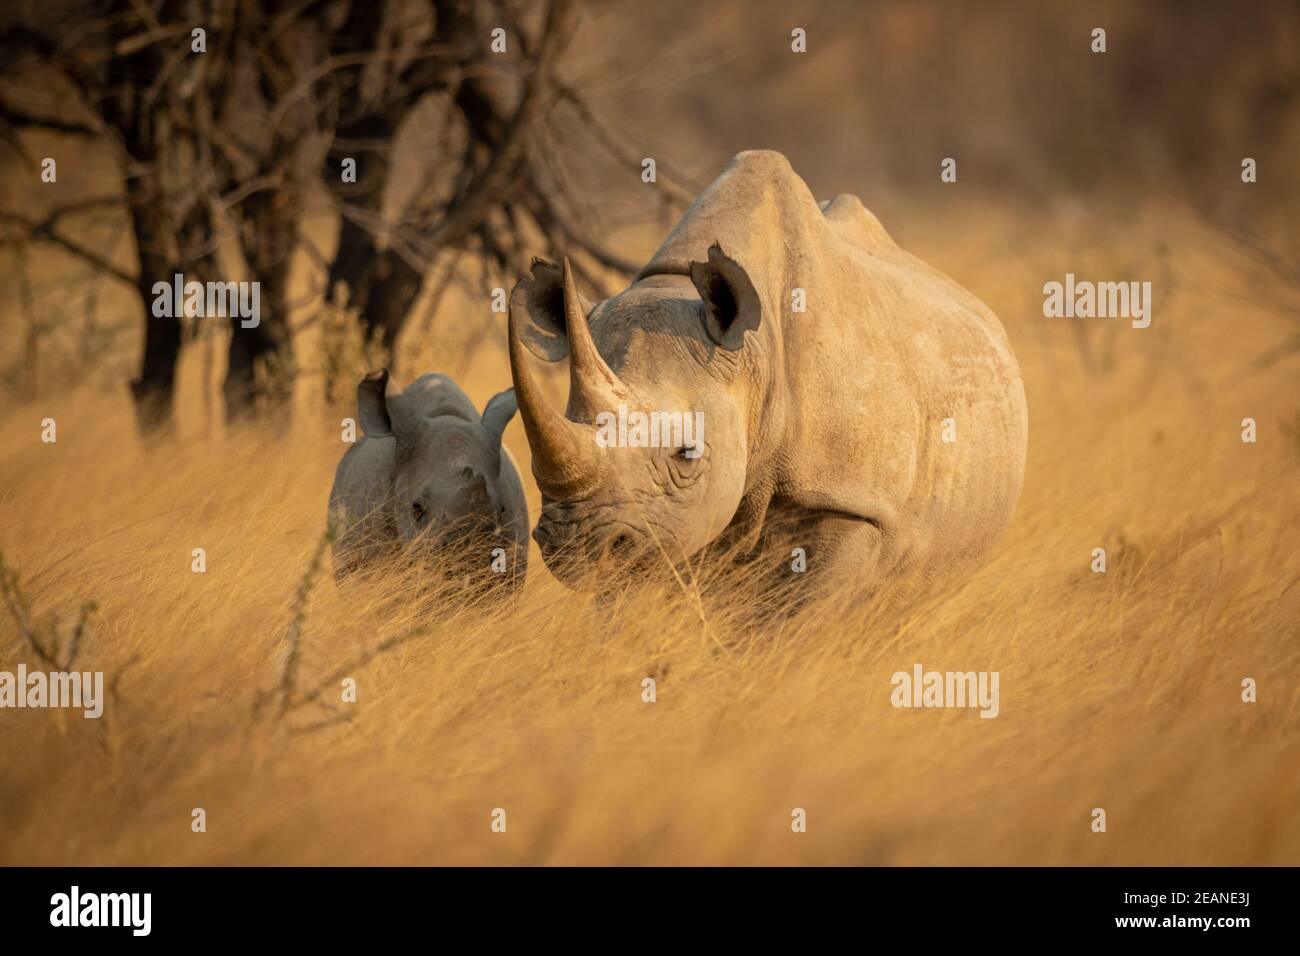 Baby black rhino in grass beside baby Stock Photo